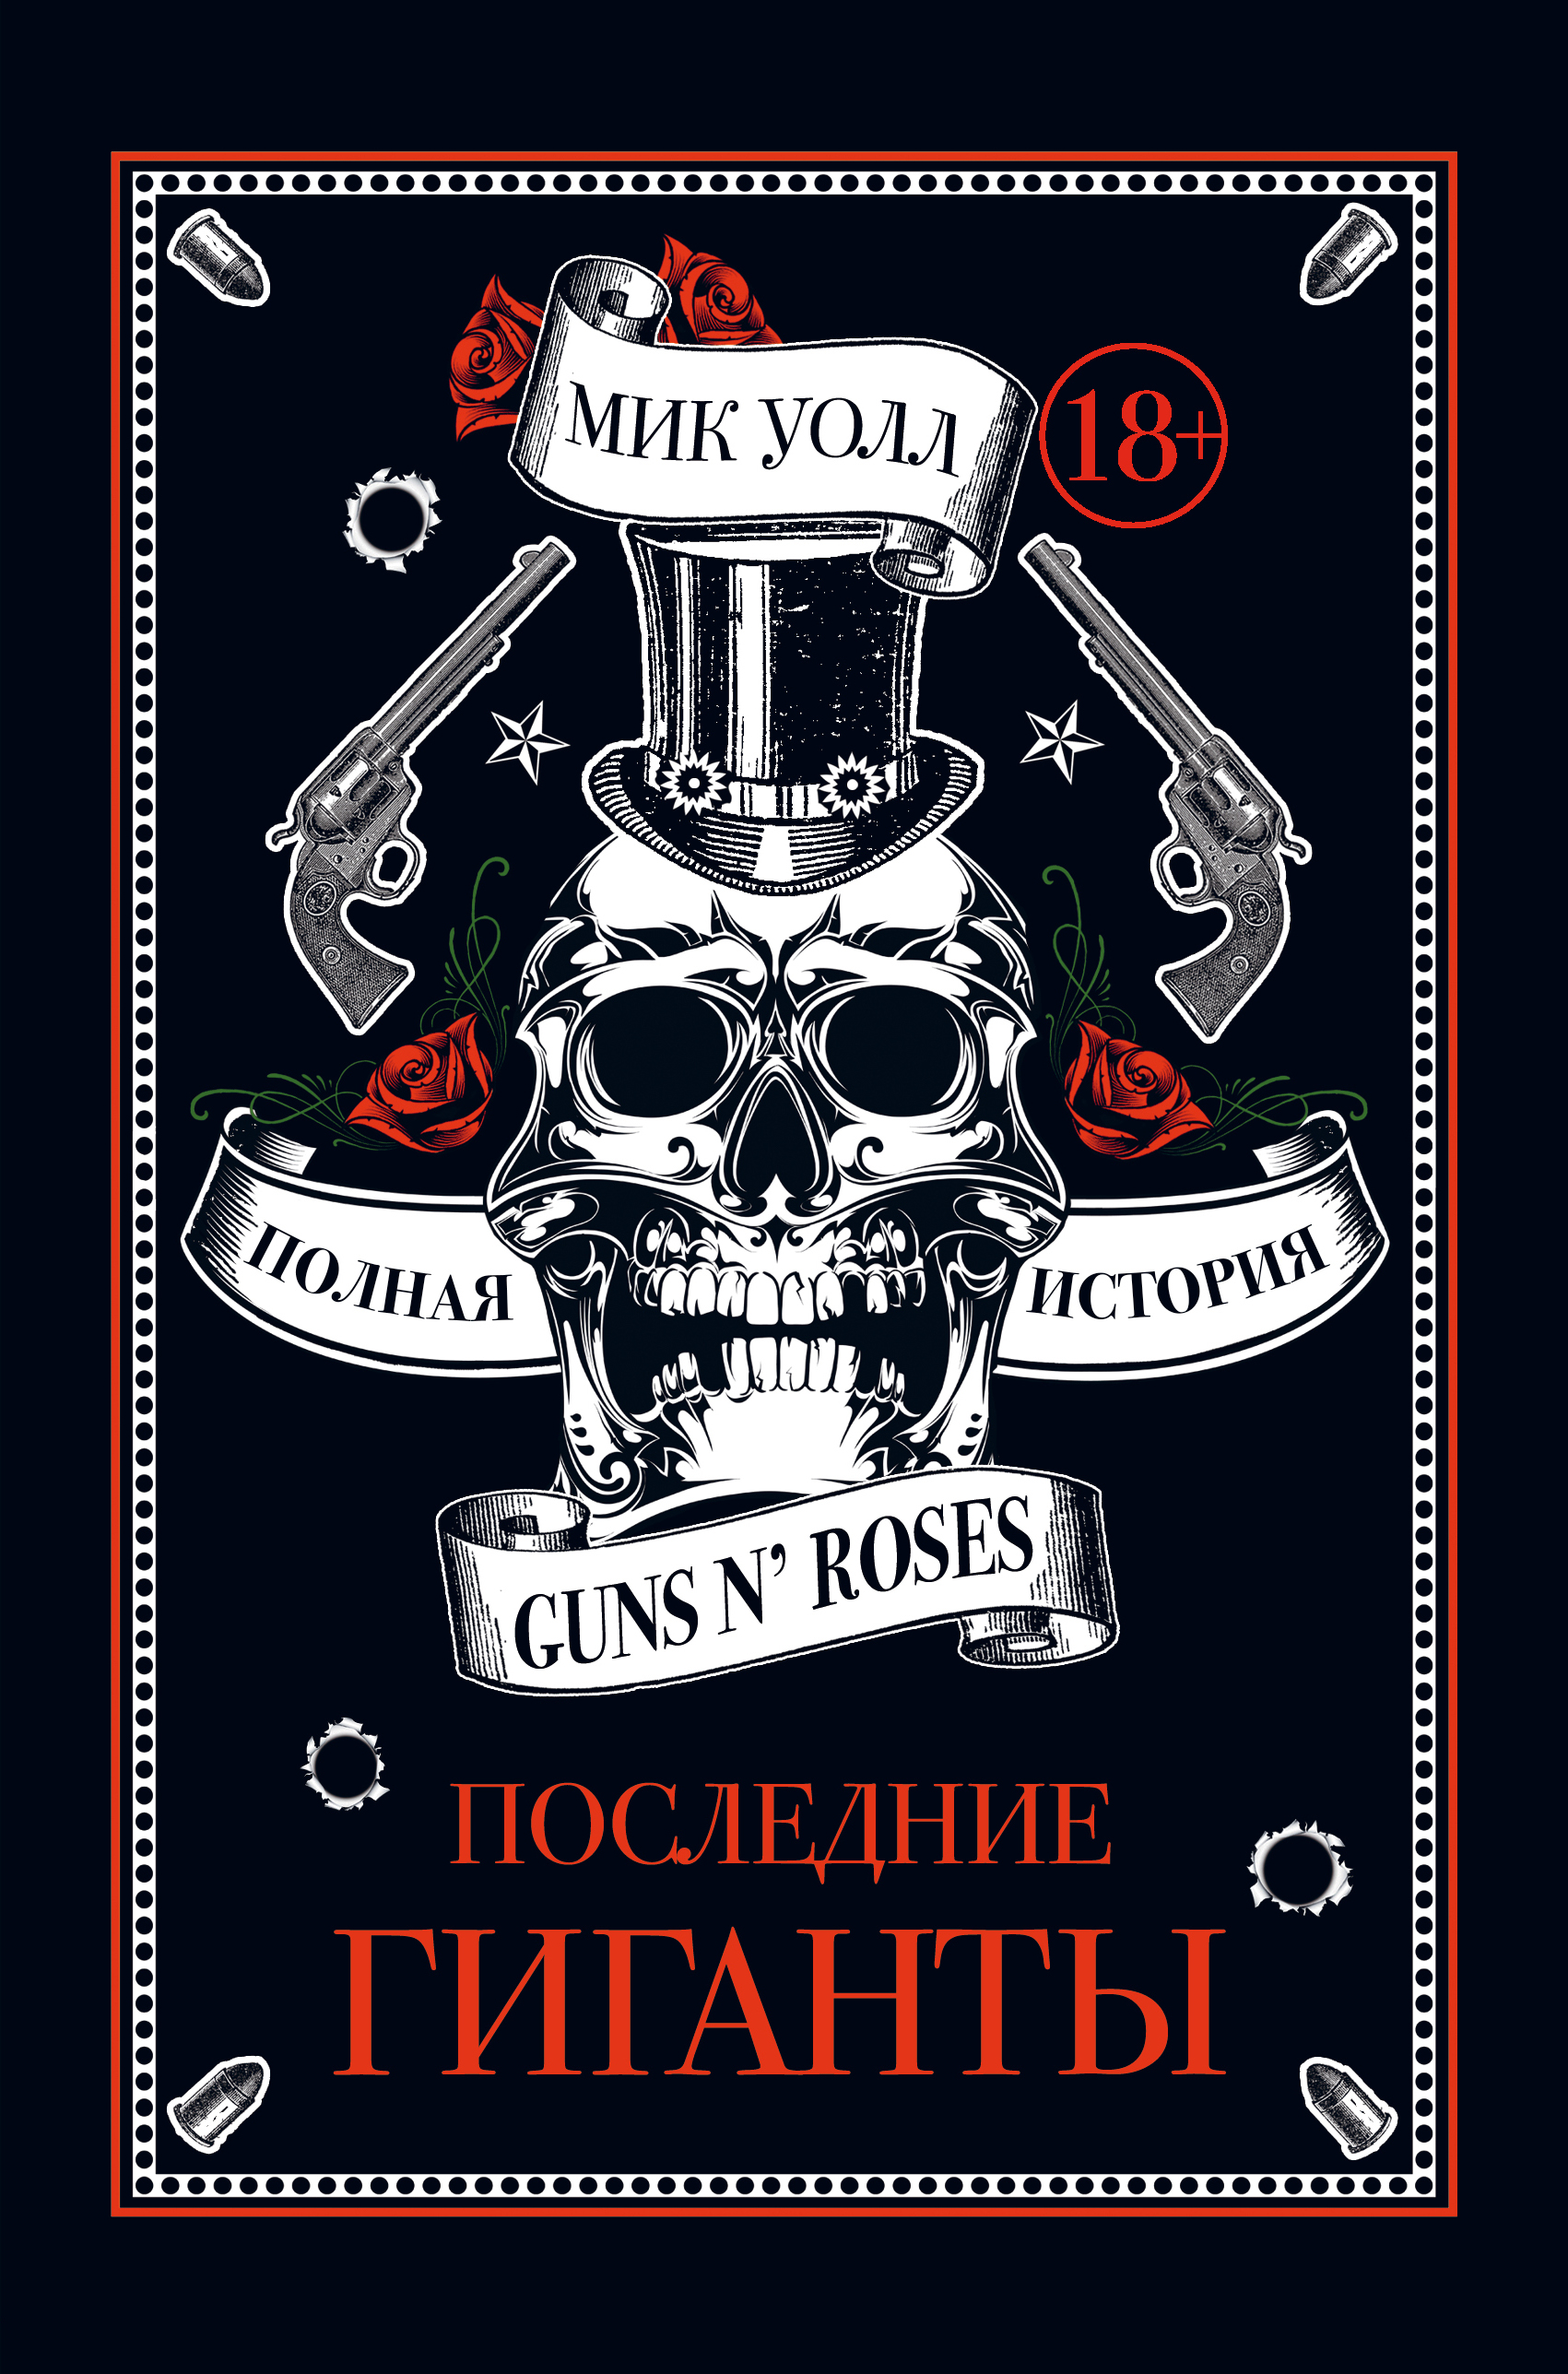 Книга Последние гиганты. Полная история Guns N’ Roses из серии , созданная Мик Уолл, может относится к жанру Биографии и Мемуары, Зарубежная прикладная и научно-популярная литература, Музыка, балет, Зарубежная публицистика. Стоимость электронной книги Последние гиганты. Полная история Guns N’ Roses с идентификатором 19024454 составляет 299.00 руб.